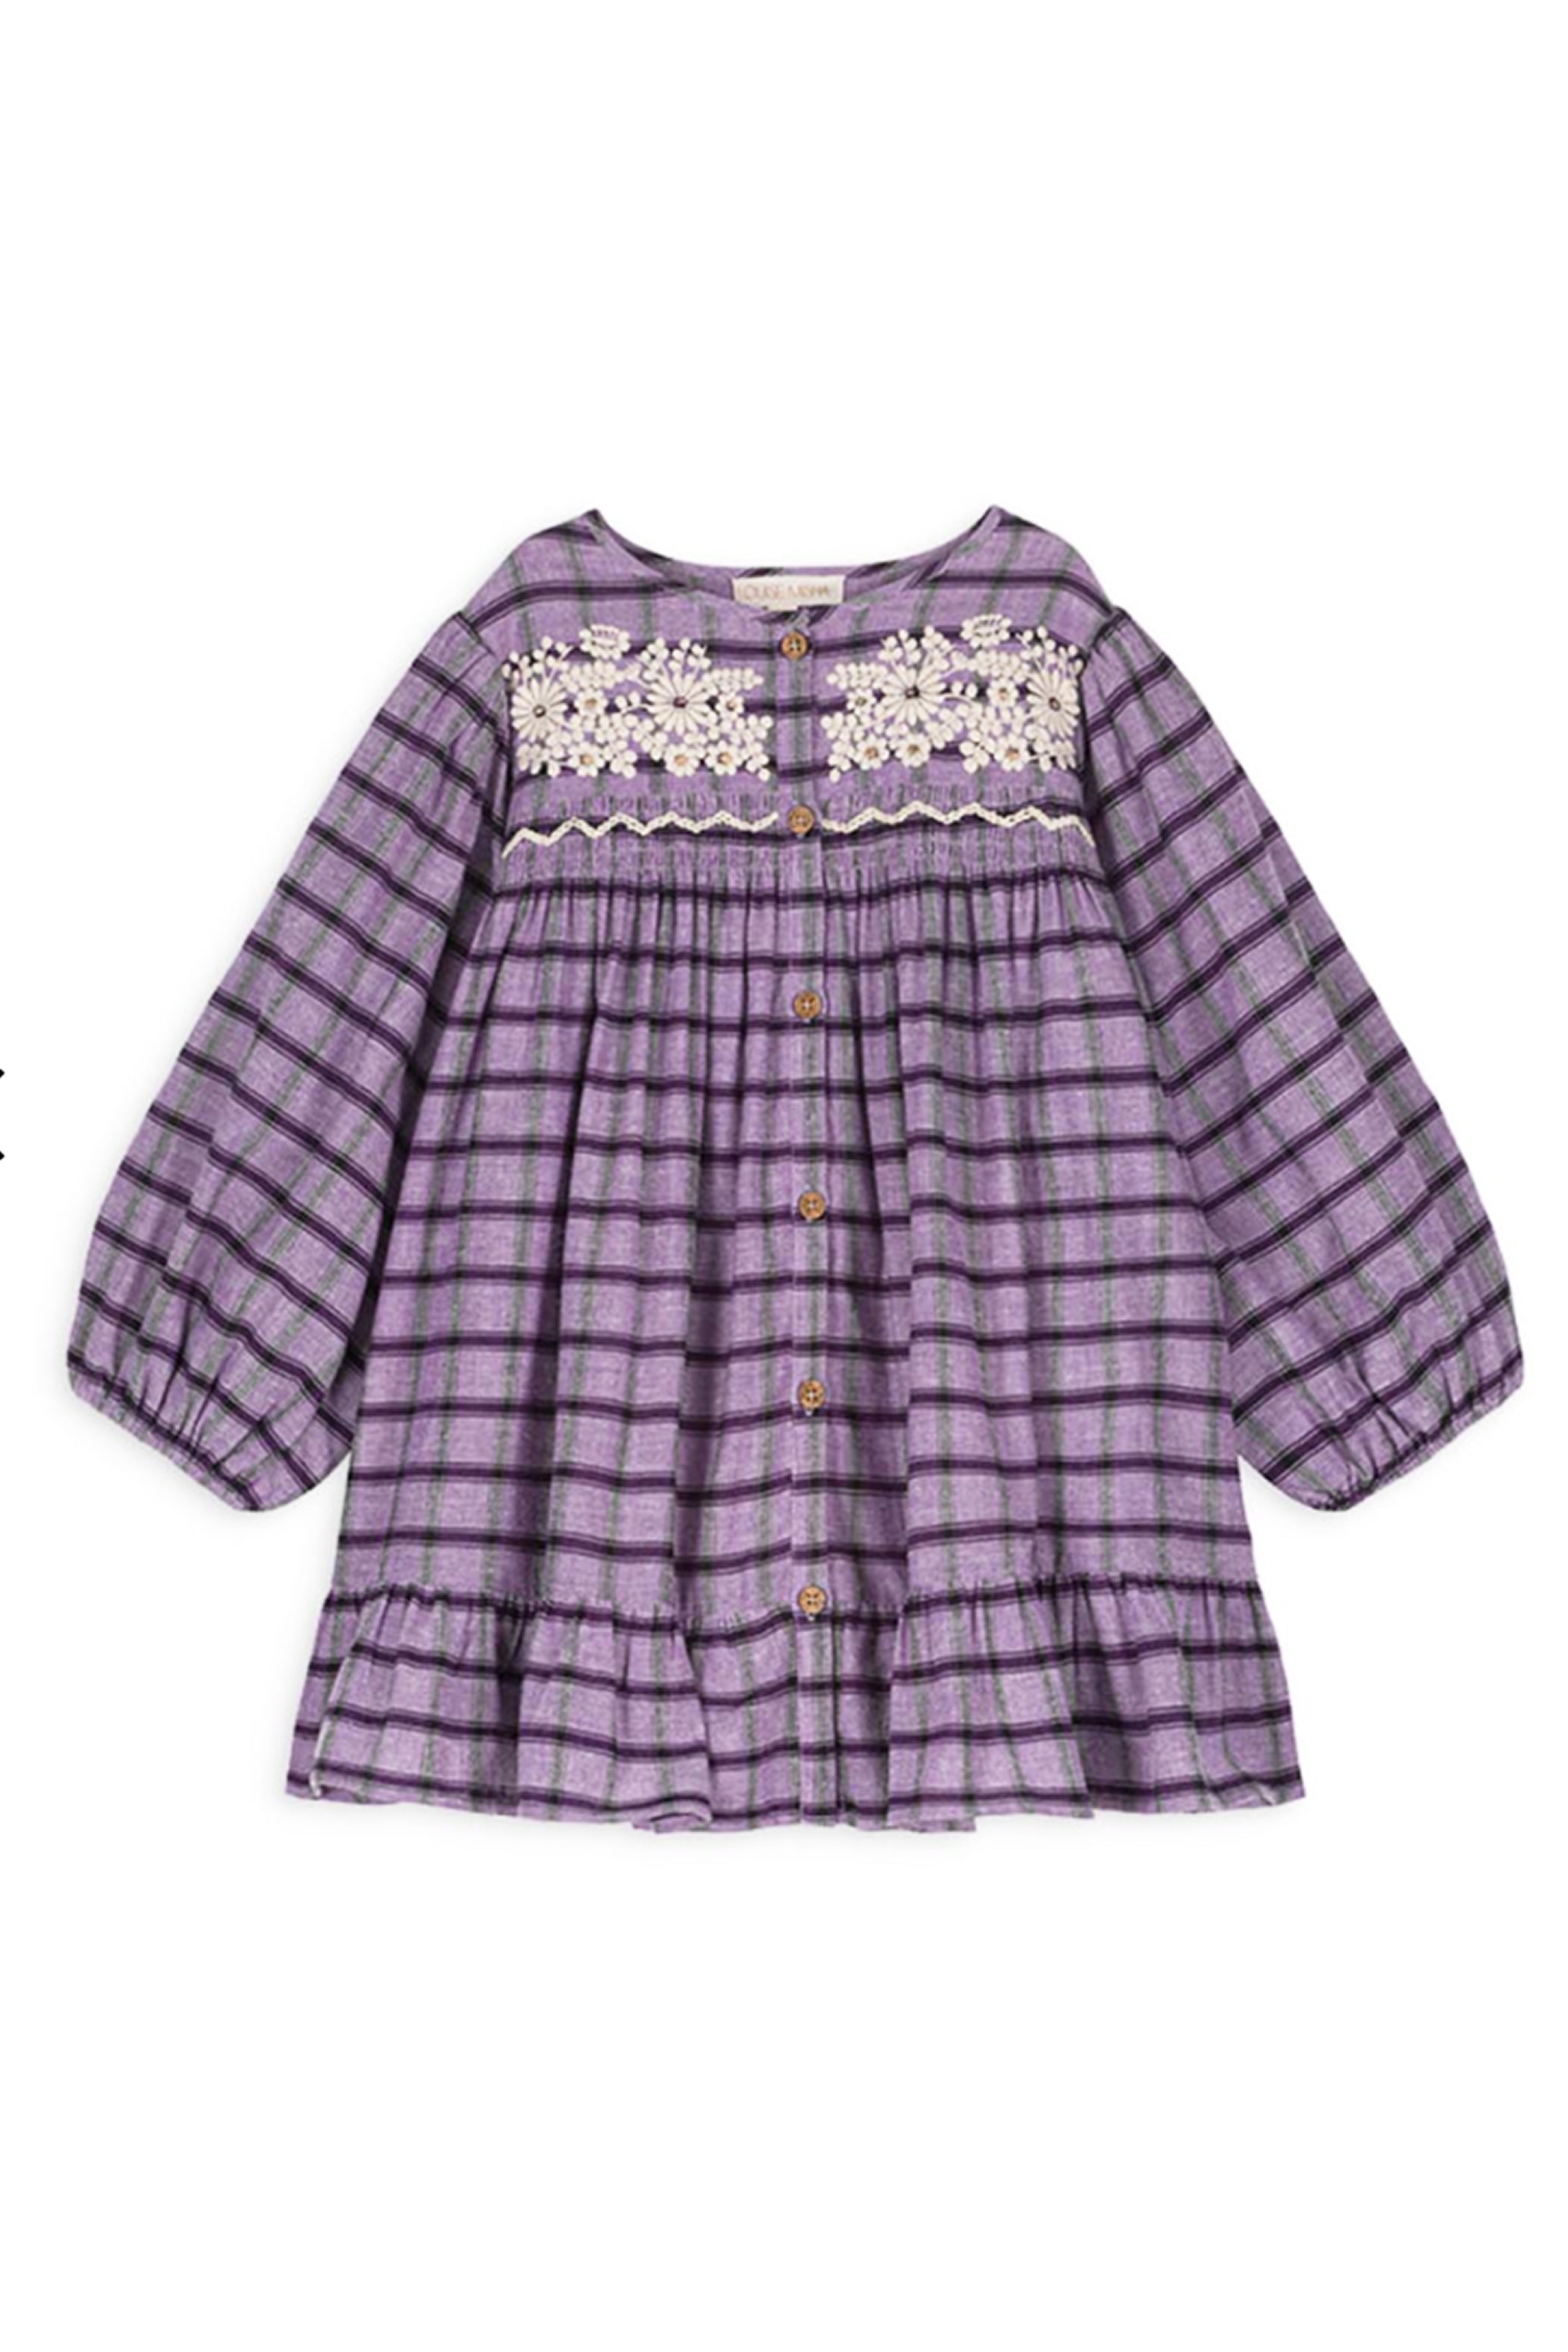 Louise Misha Massilia Dress- Purple Checks